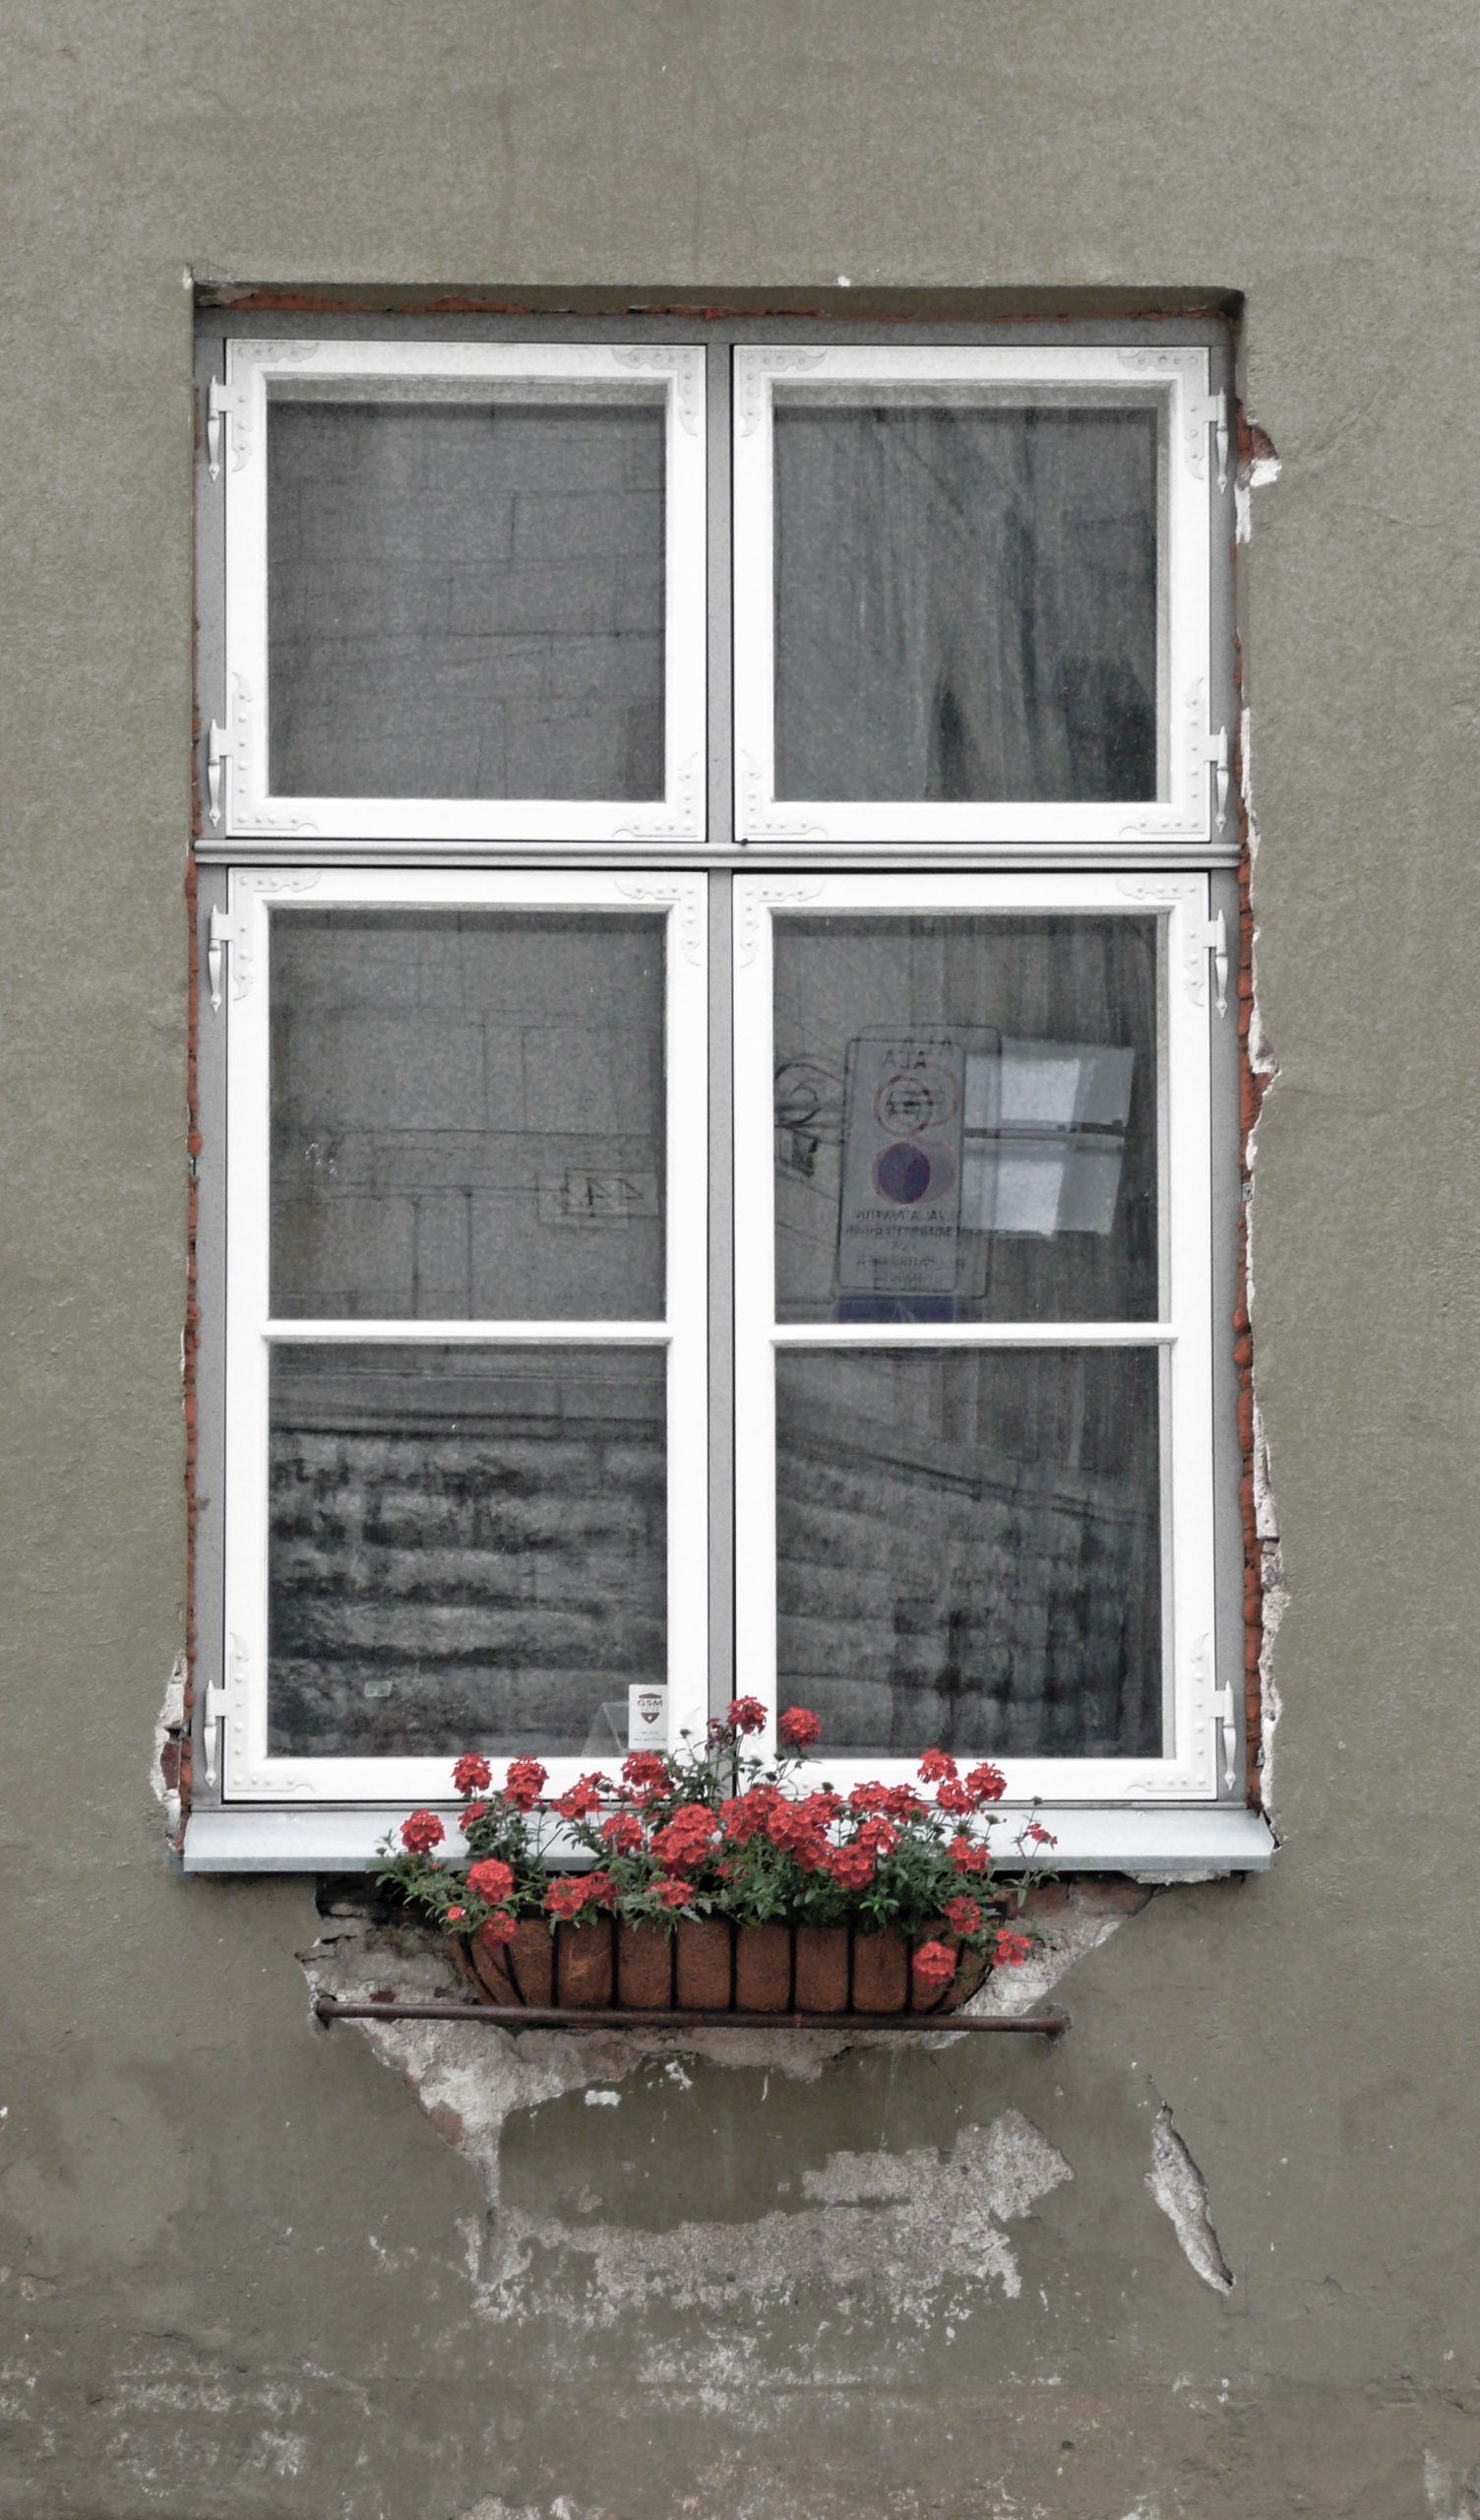 Window of house in Tallinn Old Town Estonia